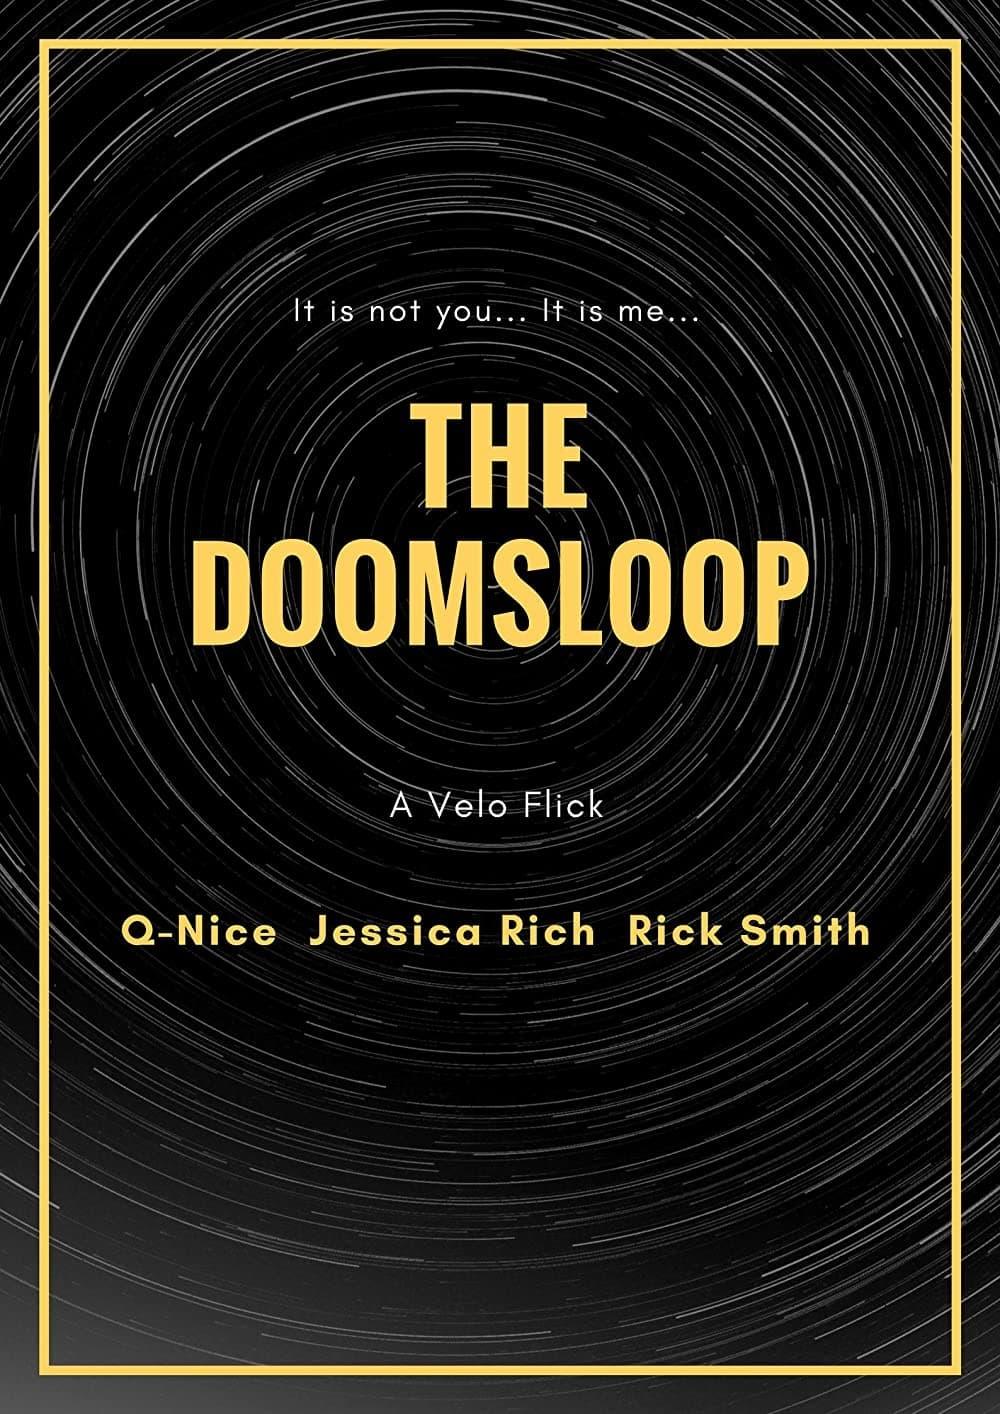 The Doomsloop poster